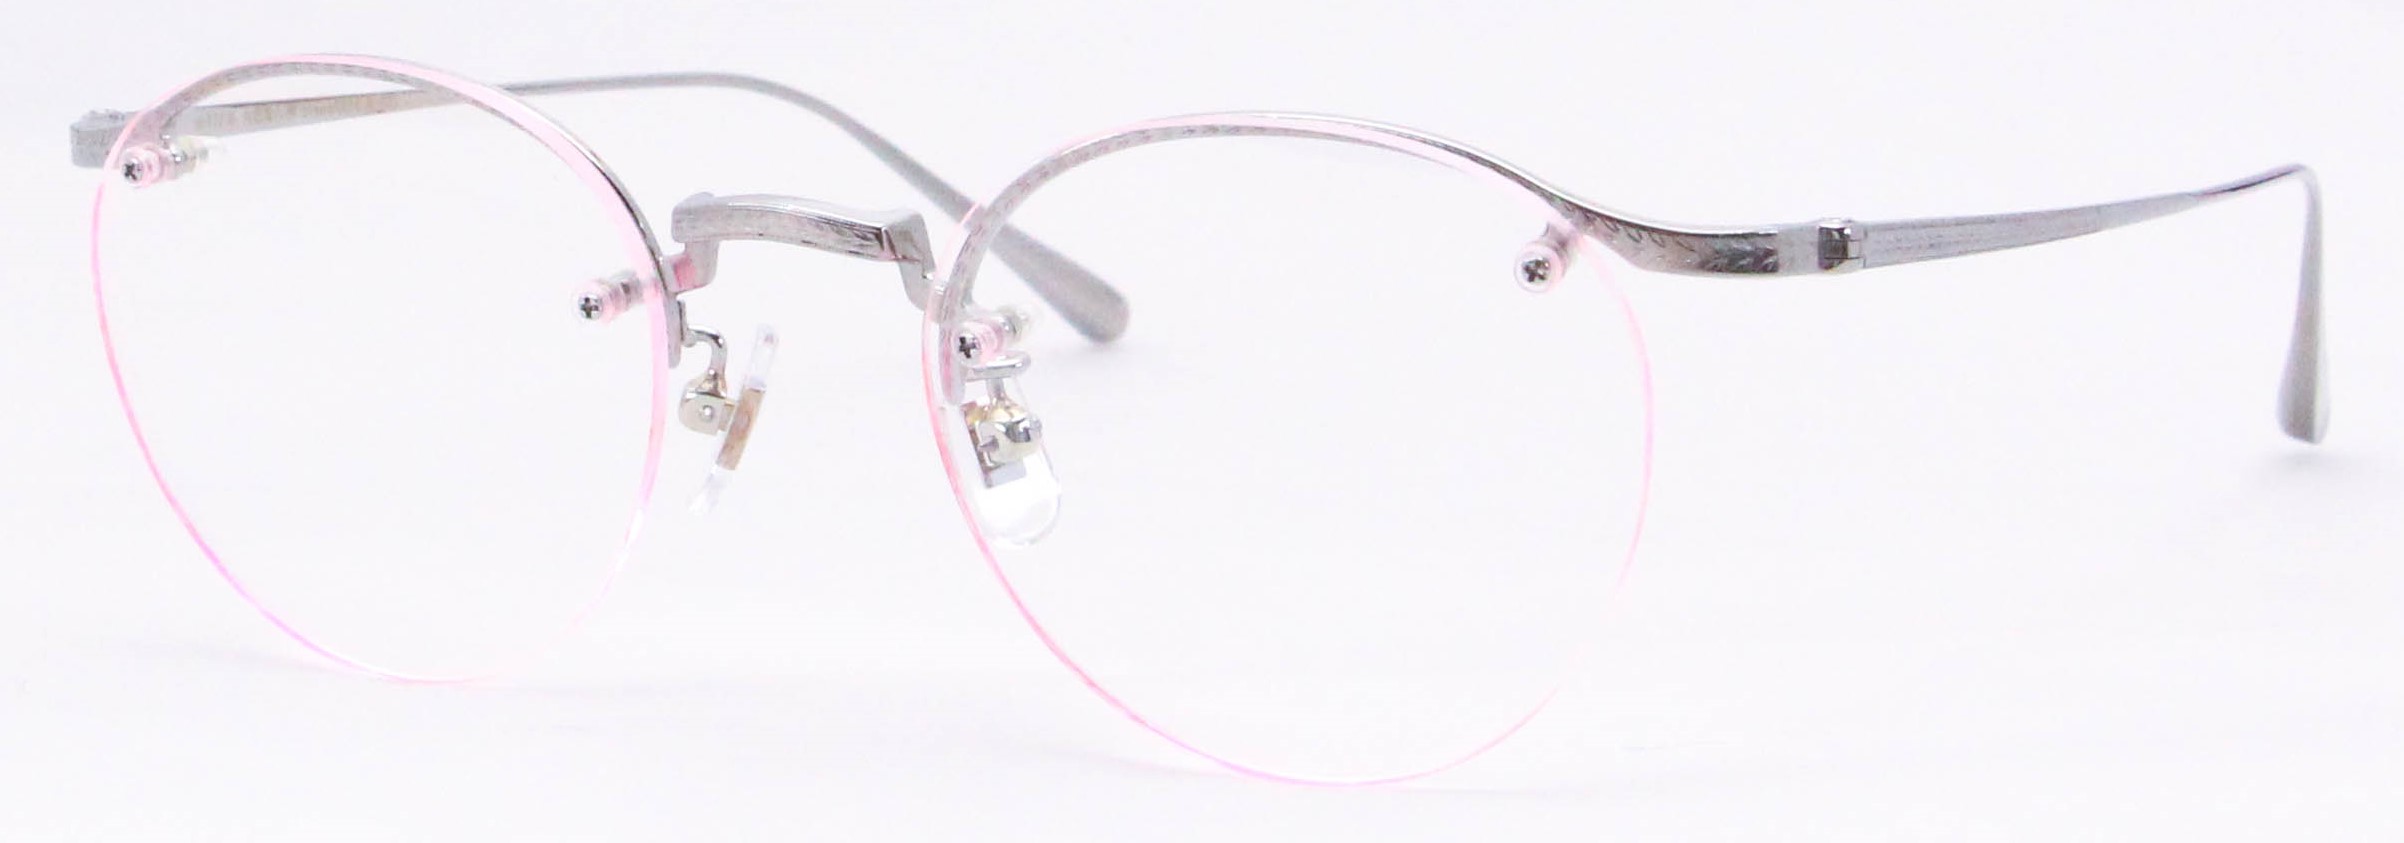 眼鏡のカラータイプC-2 Silver